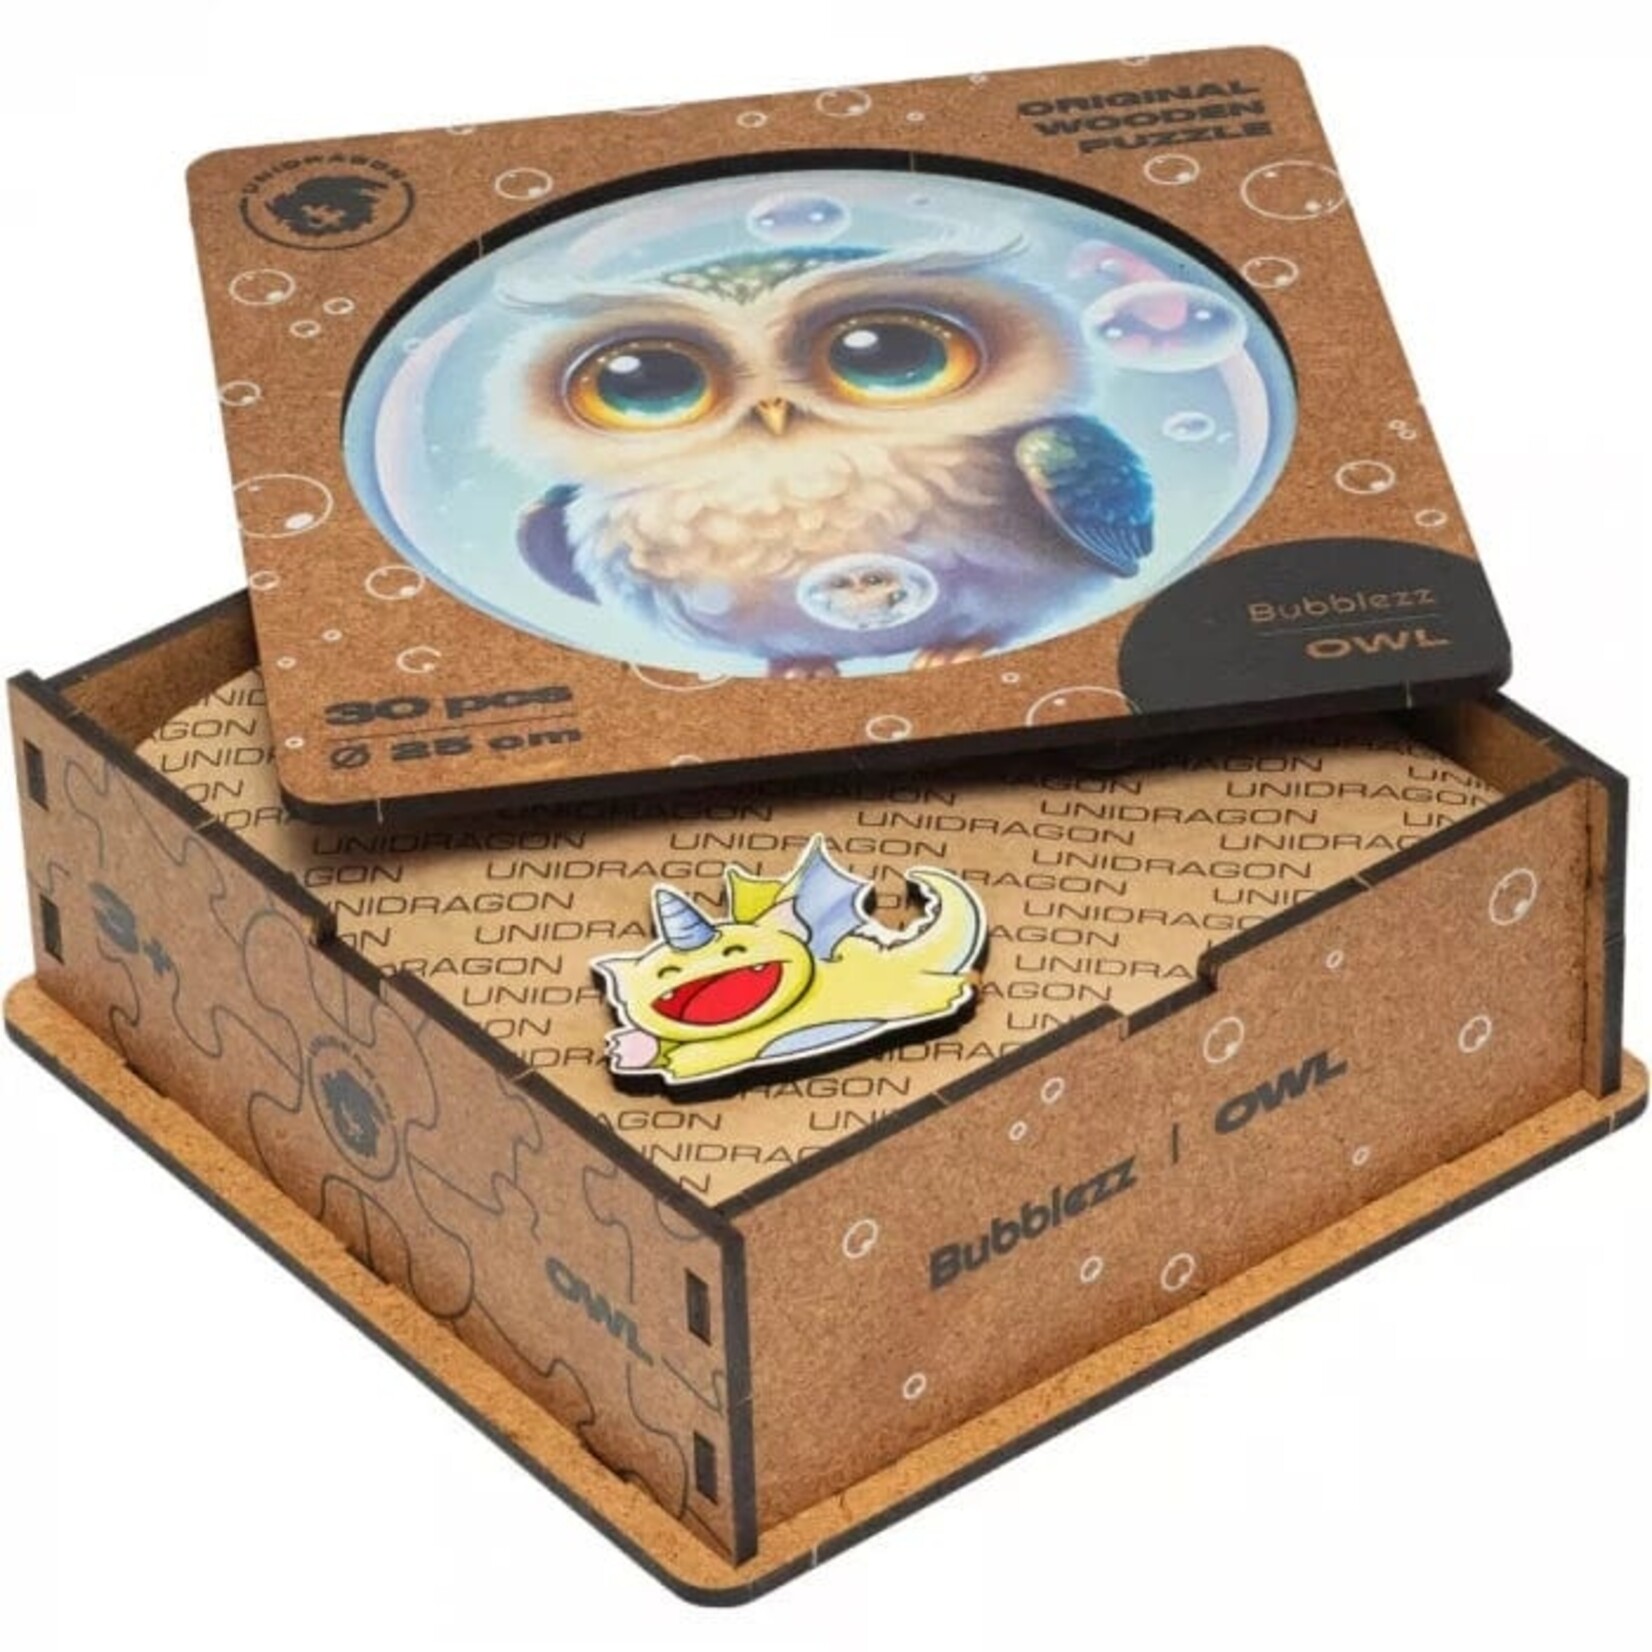 Unidragon Wood Puzzle - Bubblezz - Owl